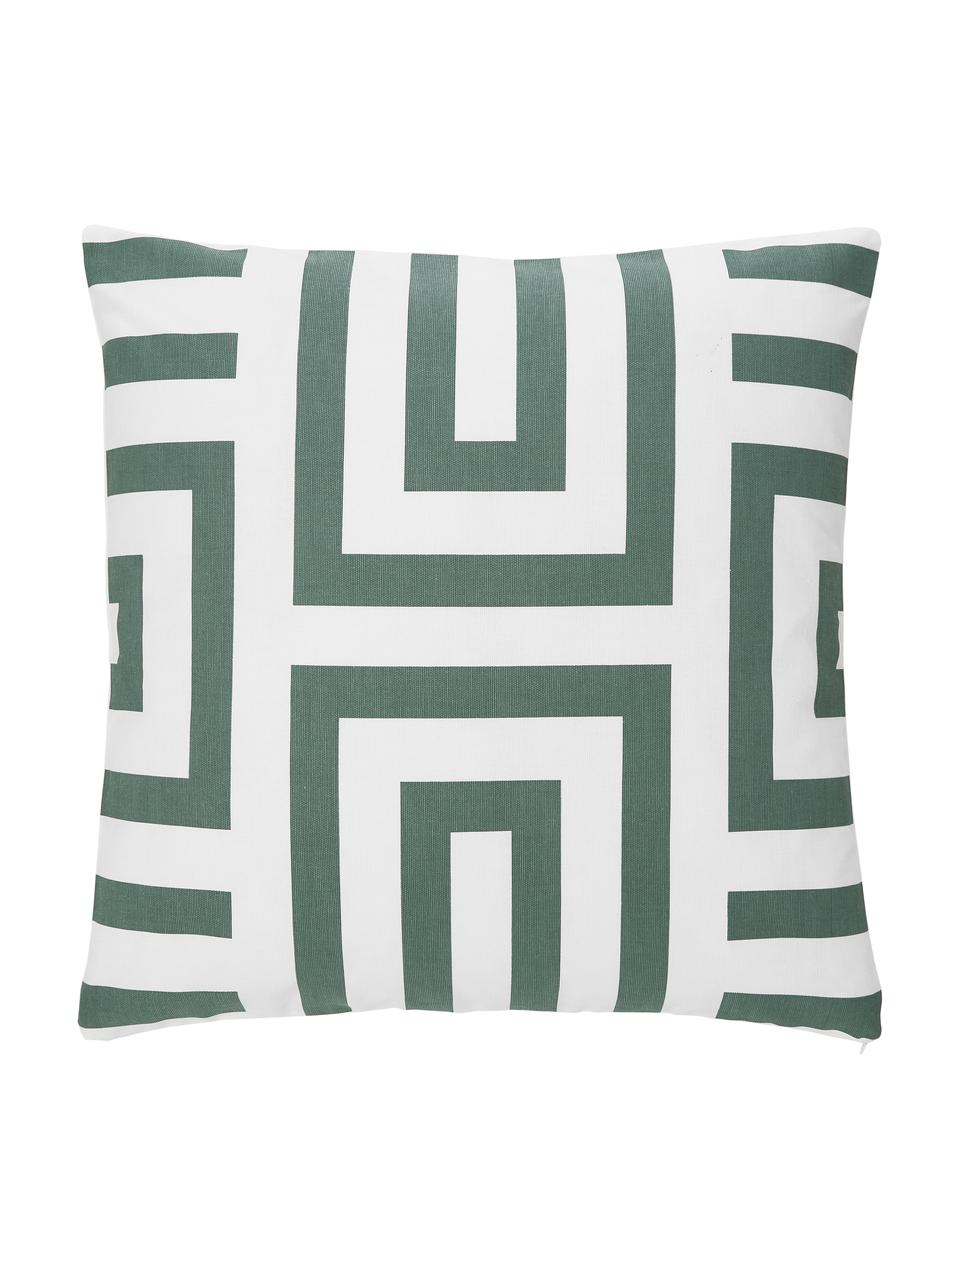 Baumwoll-Kissenhülle Bram mit grafischem Muster, 100% Baumwolle, Grün, Weiß, B 45 x L 45 cm